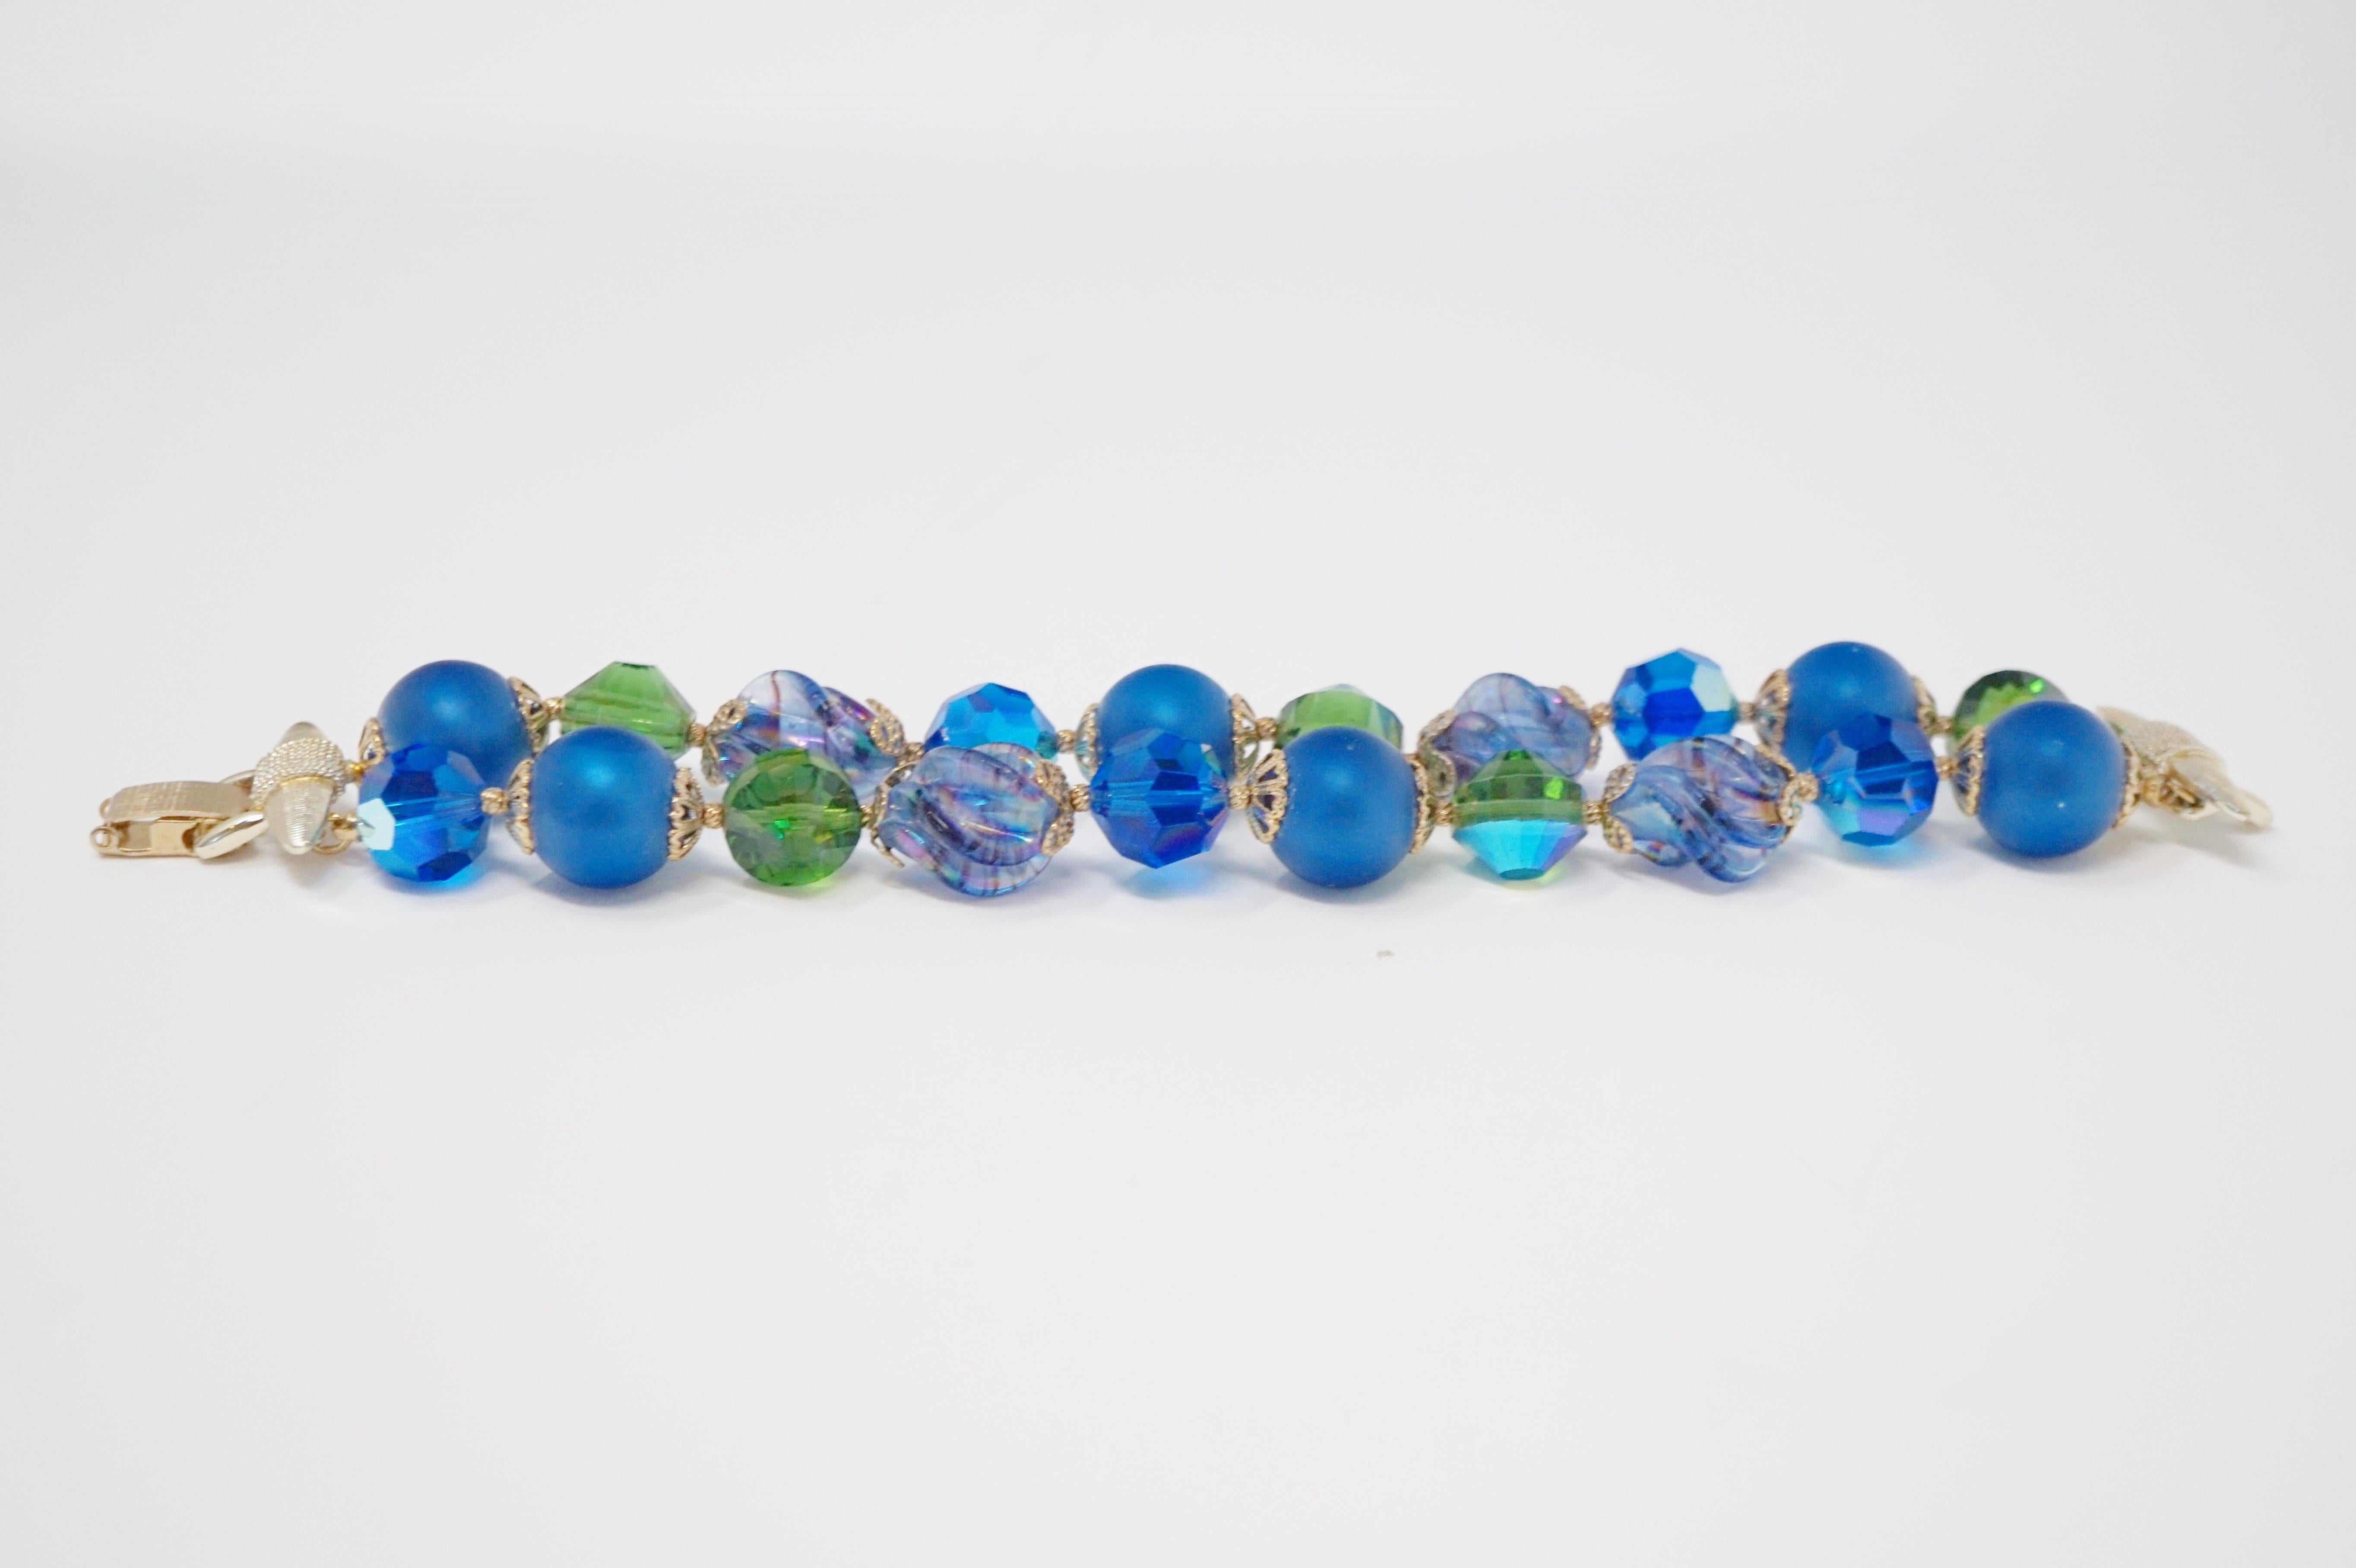 Cet exquis bracelet en perles à double brin de Vendome présente un mélange de perles bleu cobalt mat, de perles en verre au mercure et de perles en cristal irisé Aurora Borealis avec des accents dorés. Signé Vendome sur le fermoir en or.  

Filiale